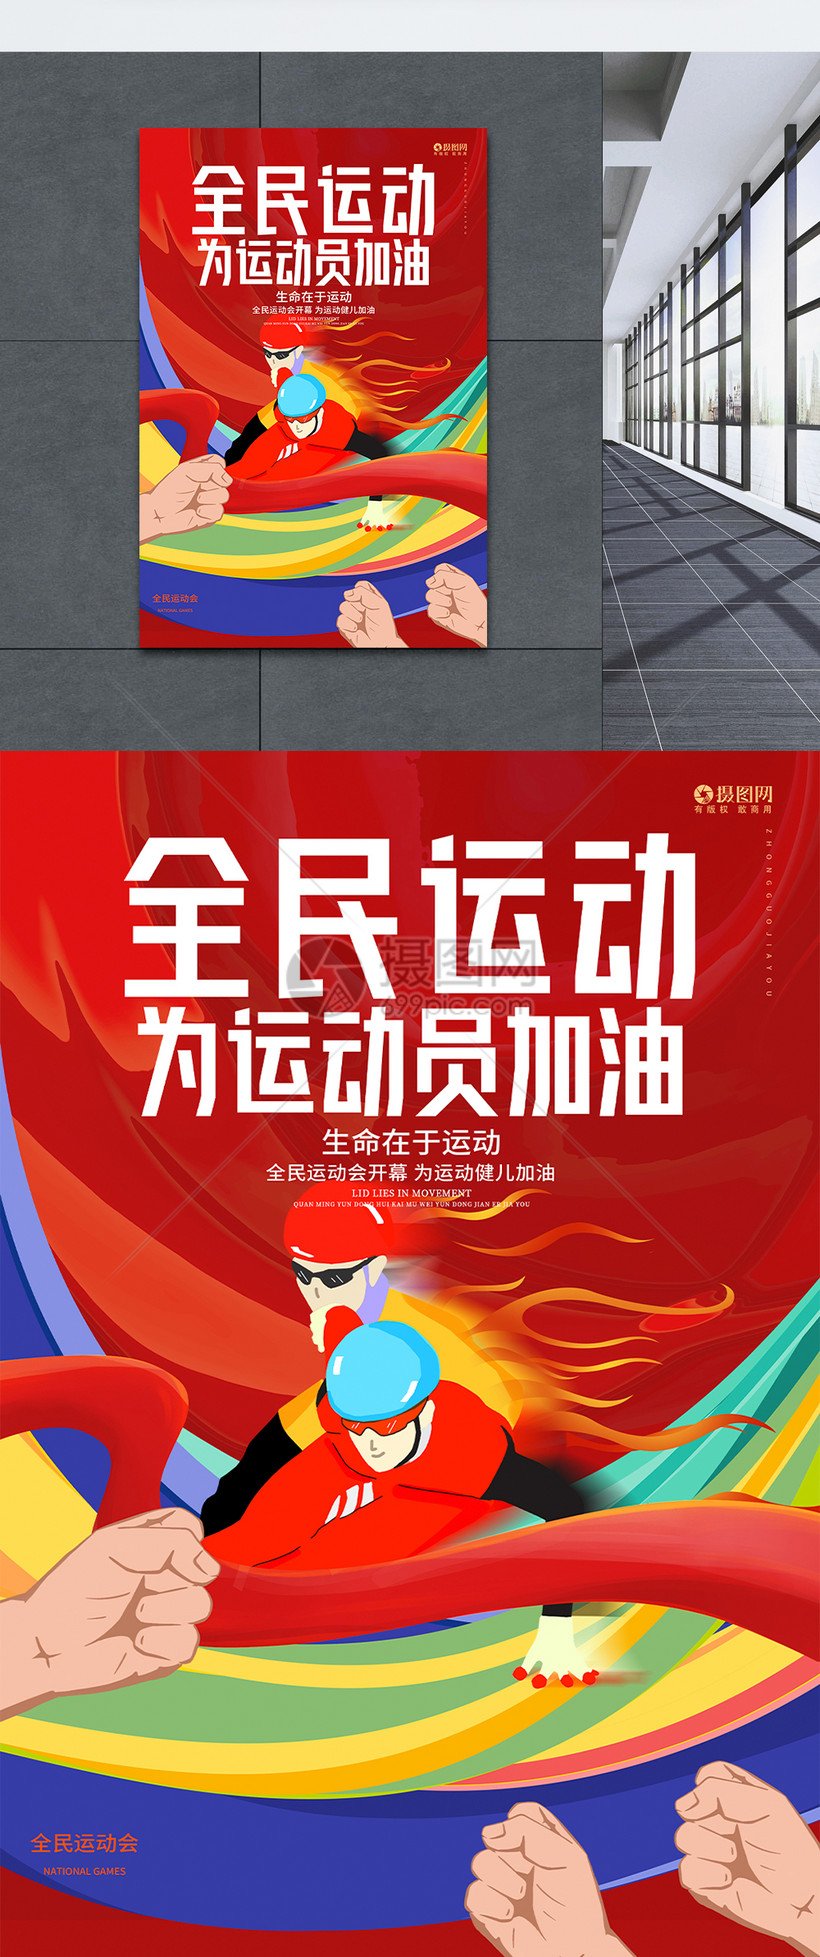 可商用相约东京东京奥运会中国队加油海报设计由设计师御炎在2021-07